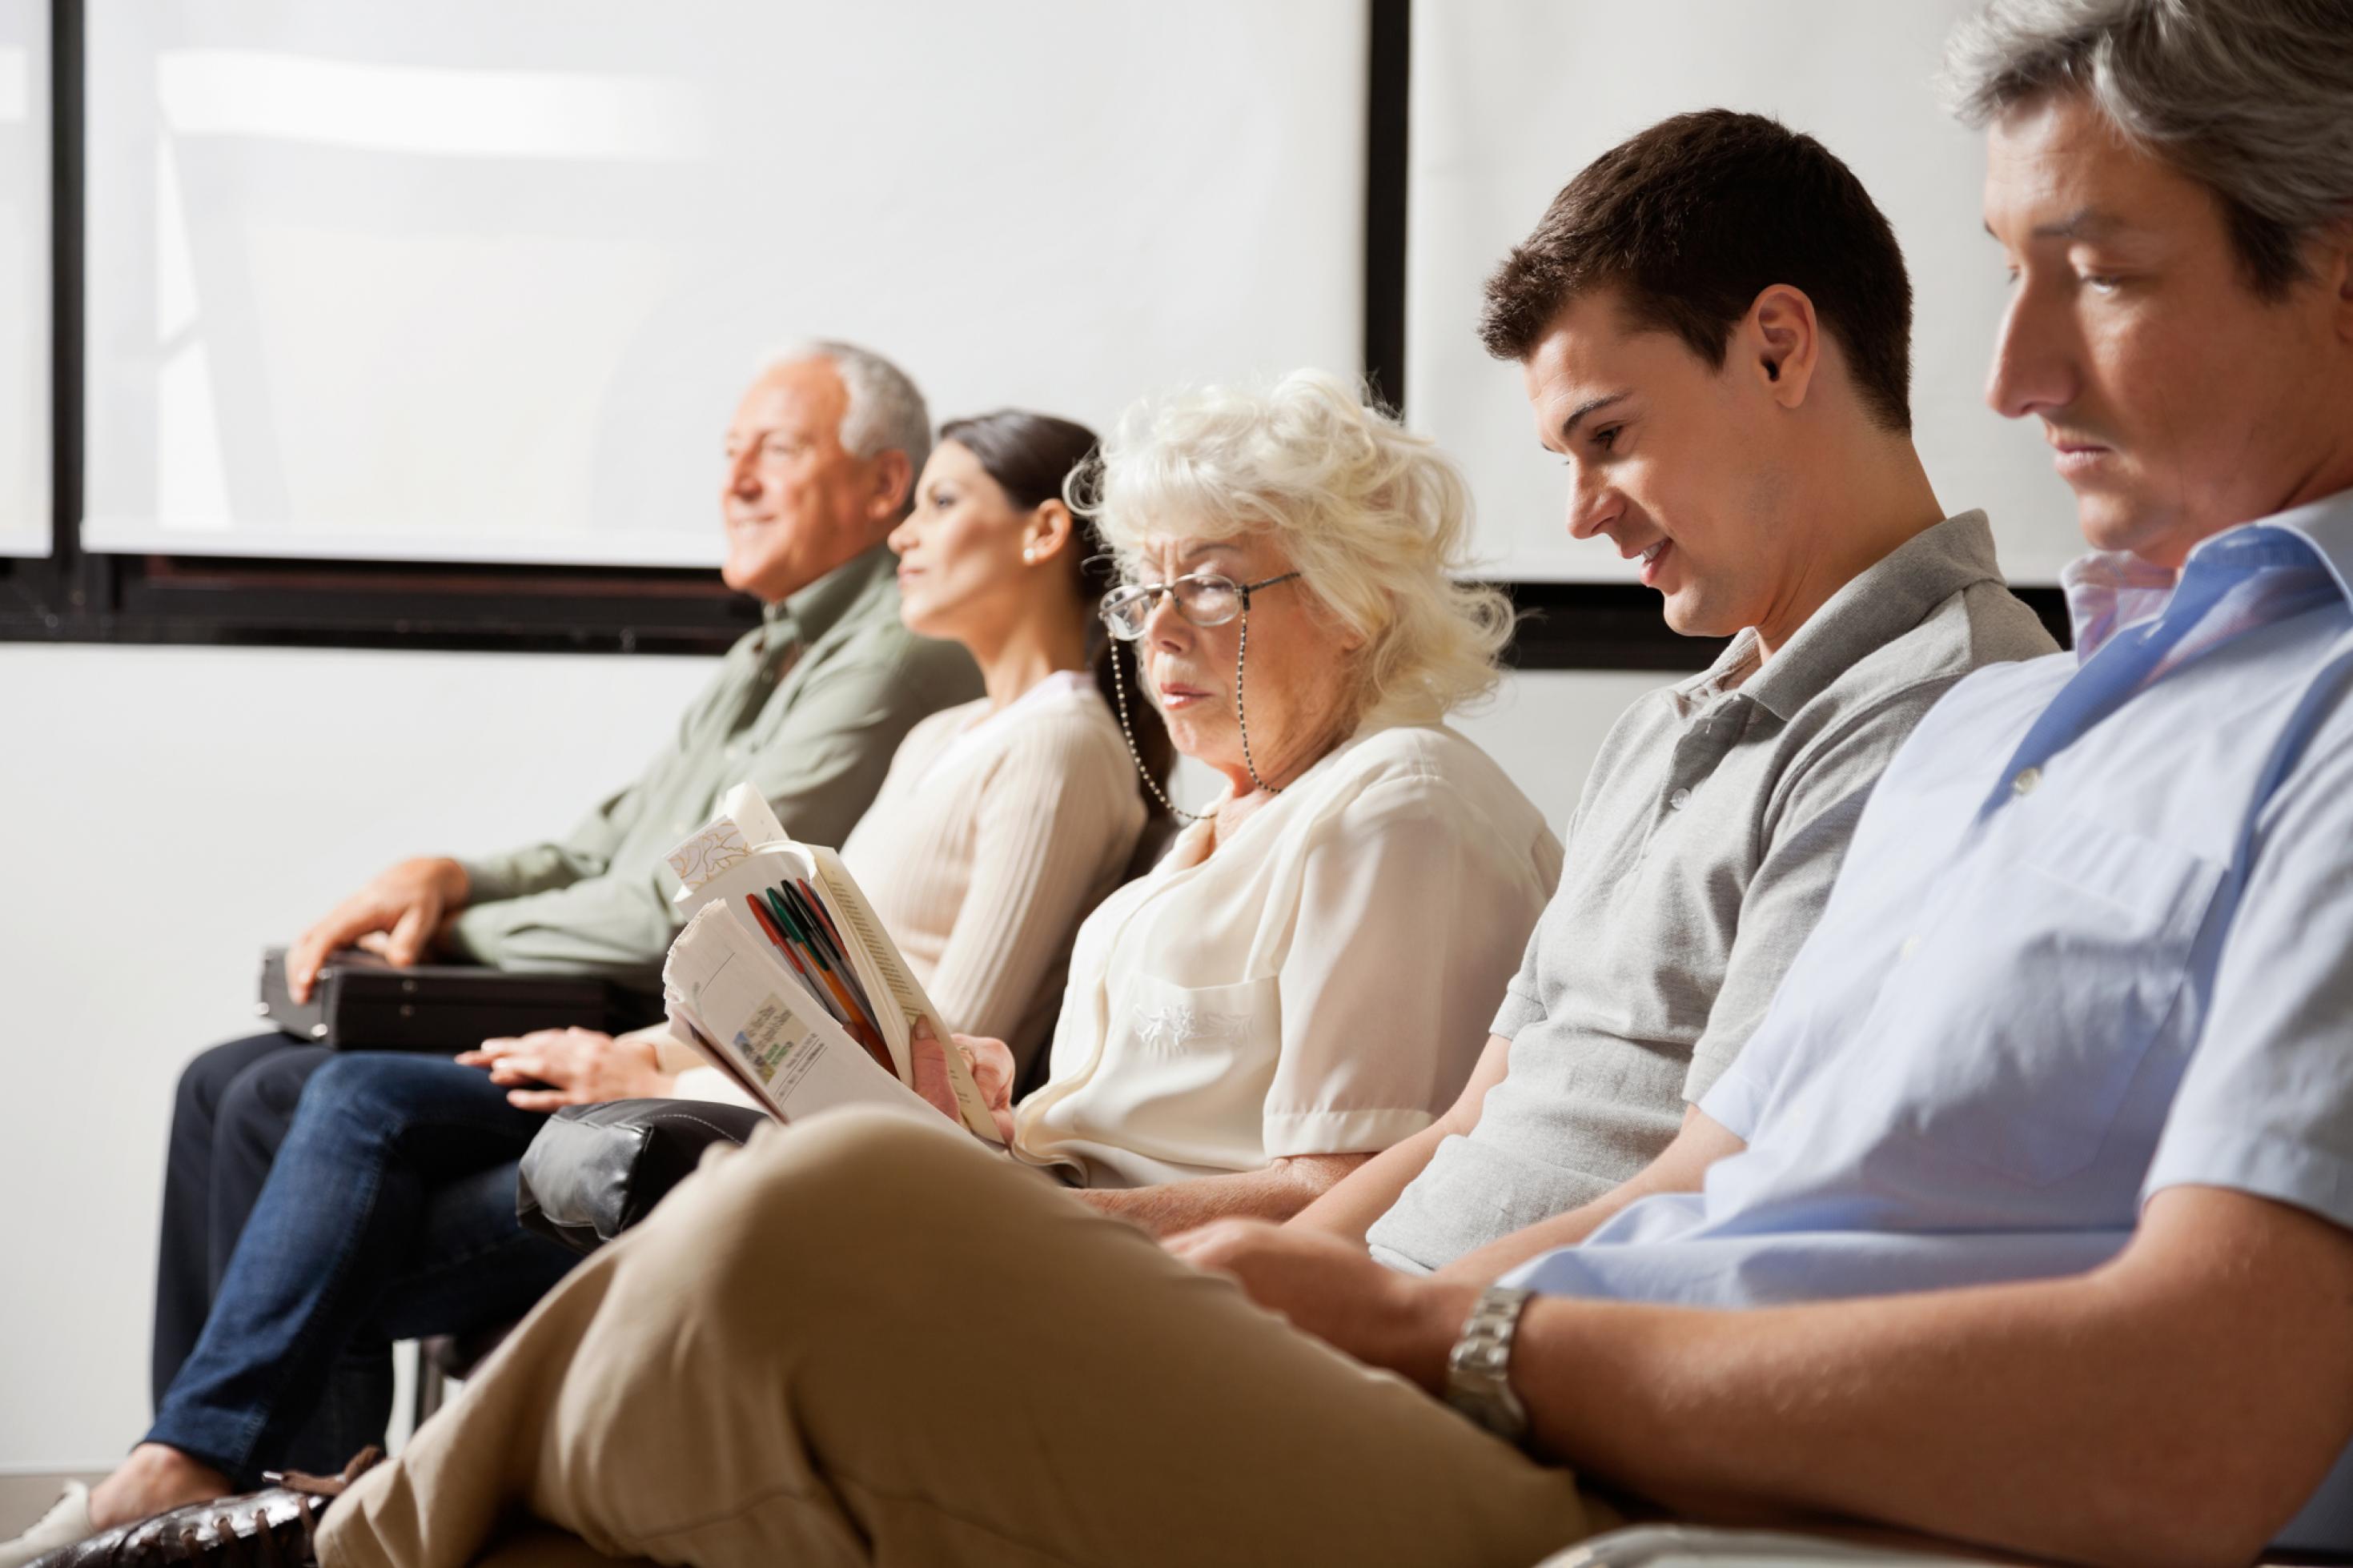 Fünf Menschen unterschiedlichen Alters sitzen in einem Wartezimmer